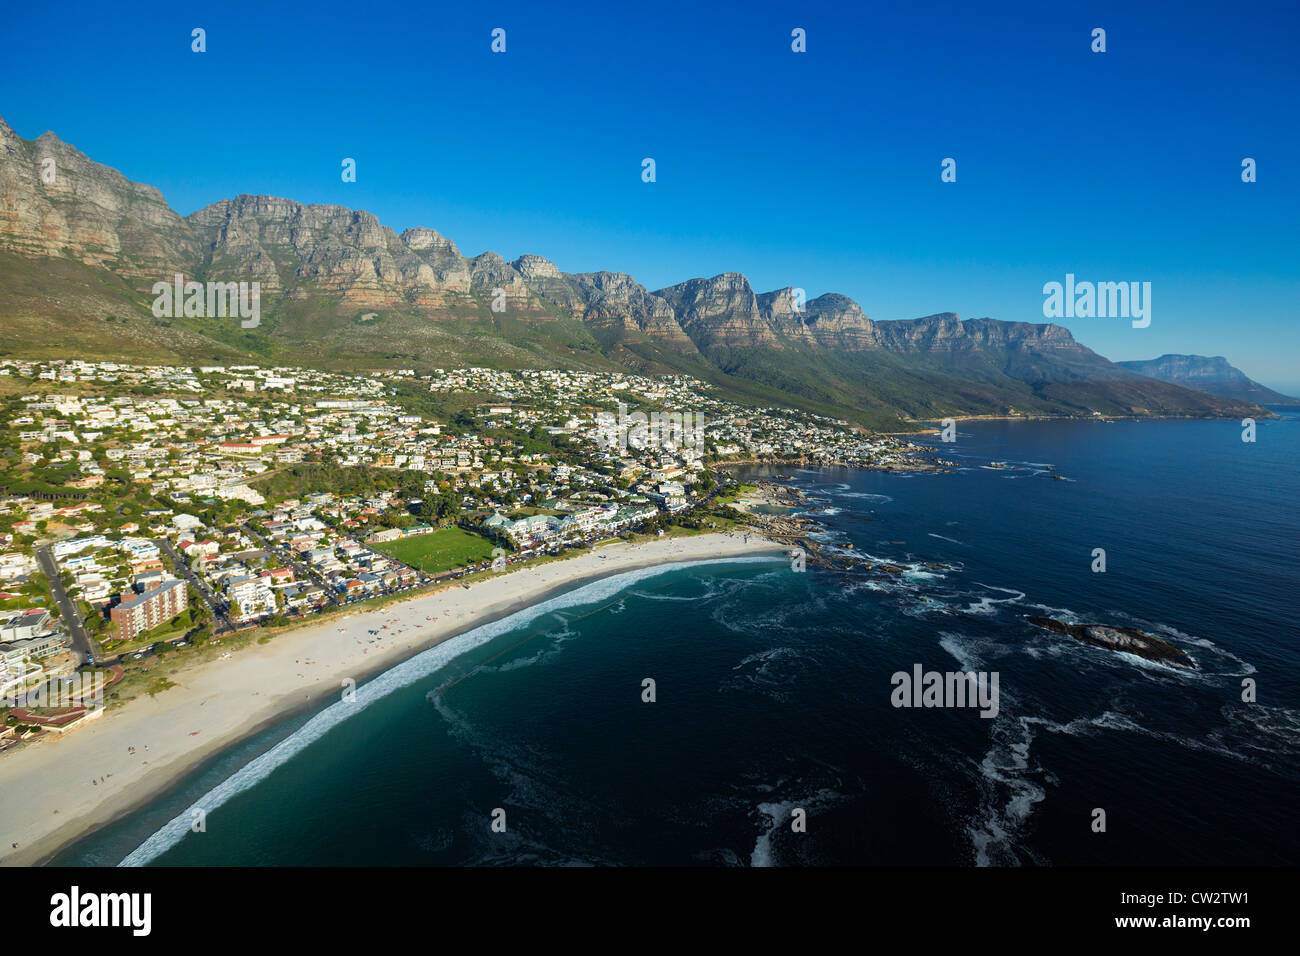 Vista aérea de Camps Bay con vistas de las montañas de los Doce Apóstoles.Ciudad del Cabo, Sudáfrica. Foto de stock